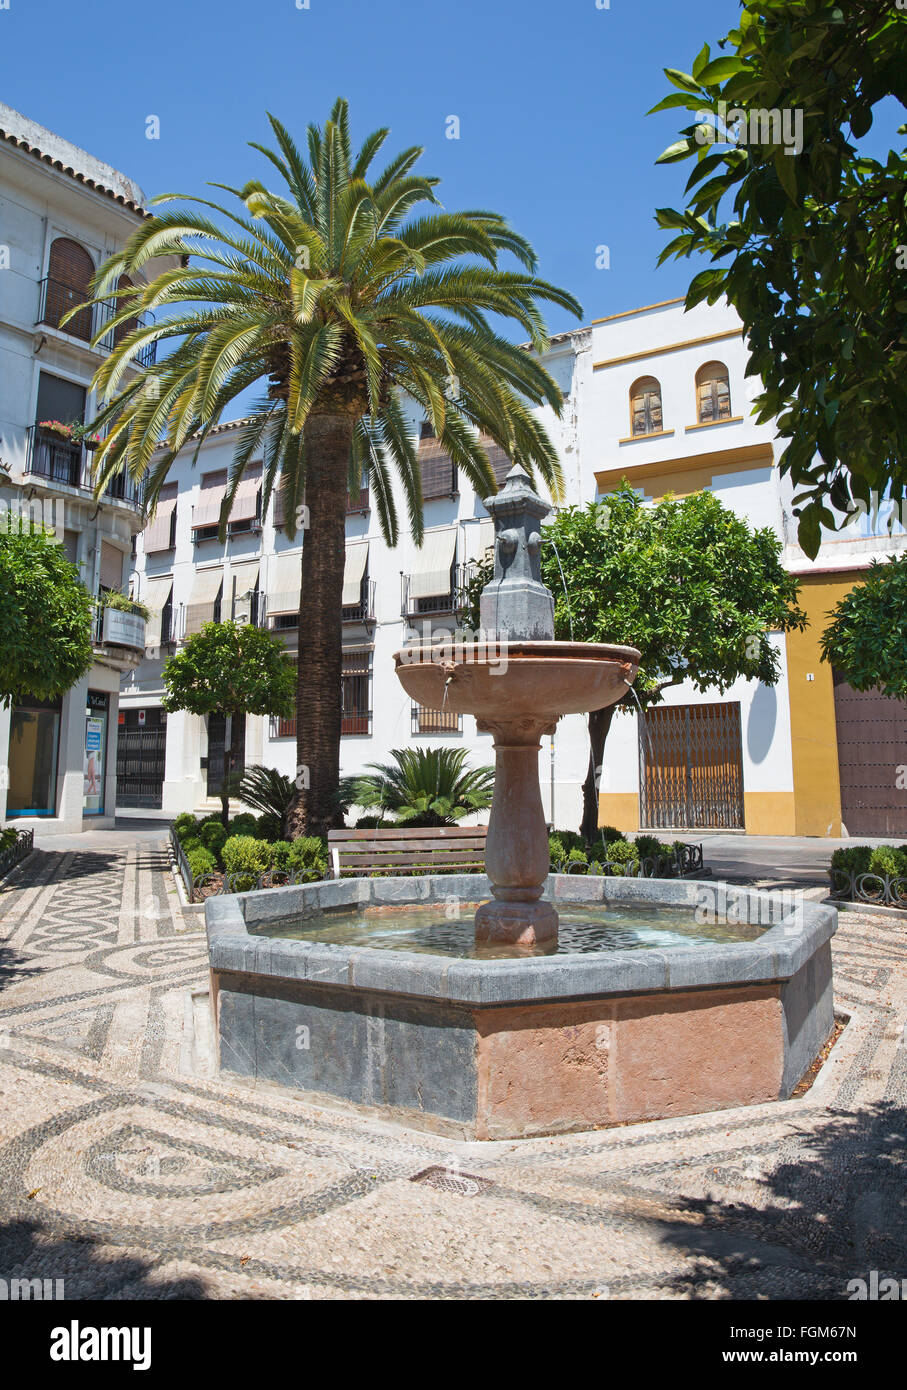 CORDOBA, Spanien - 26. Mai 2015: Die Plaza de San Andres Platz mit dem kleinen Brunnen. Stockfoto